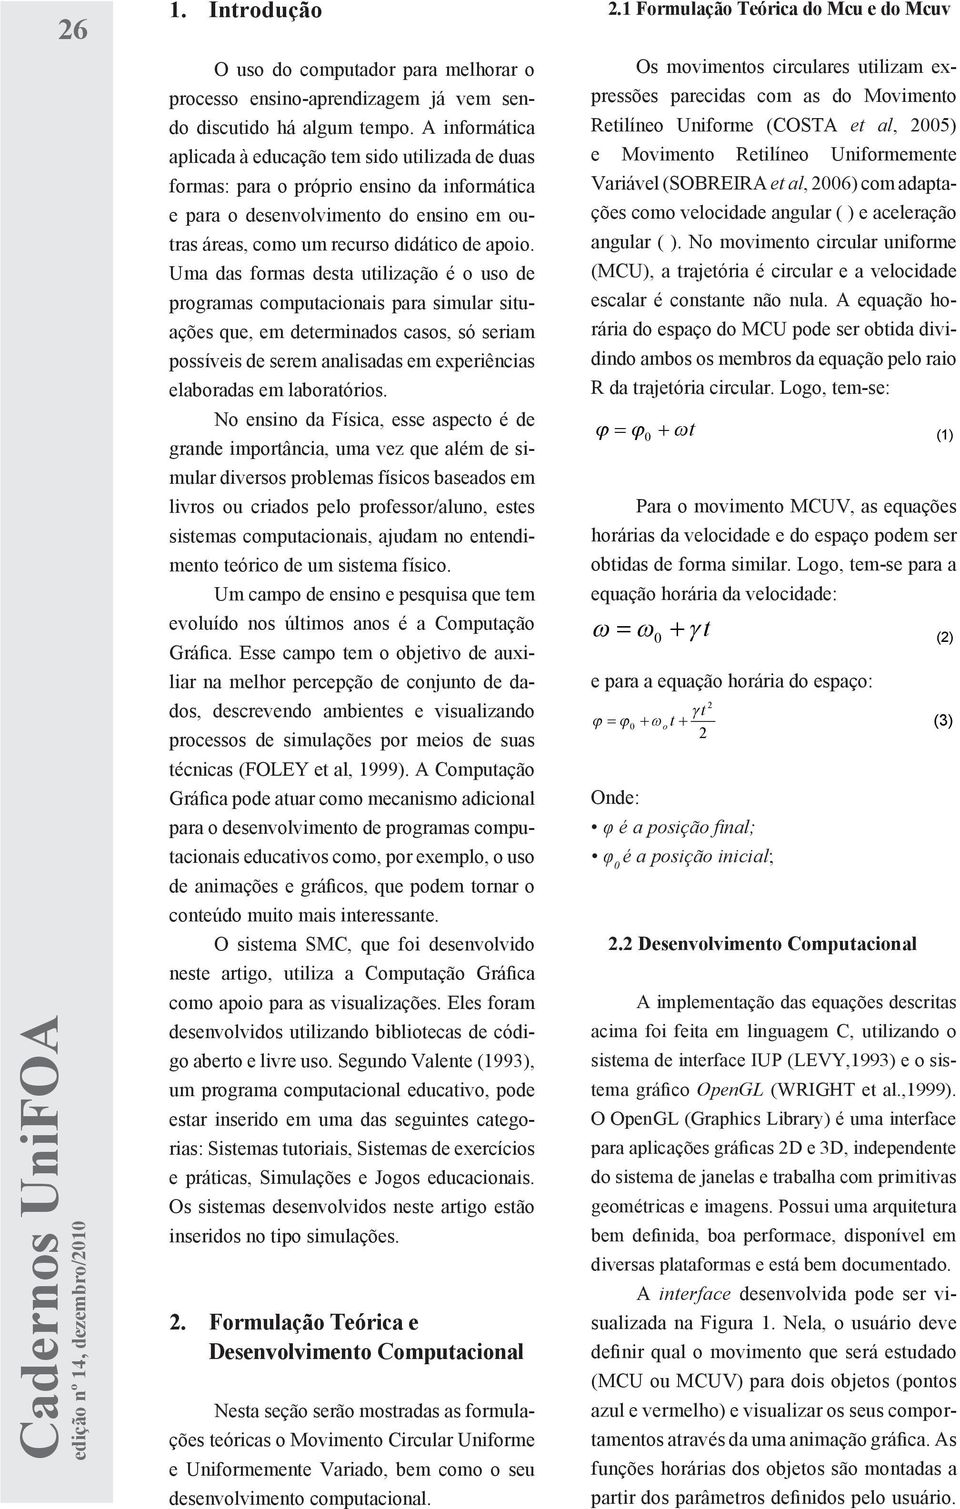 1 FORMULAÇÃO TEÓRICA Retilíneo DO Uniforme MCU E DO MCUV (COSTA et al, 005).